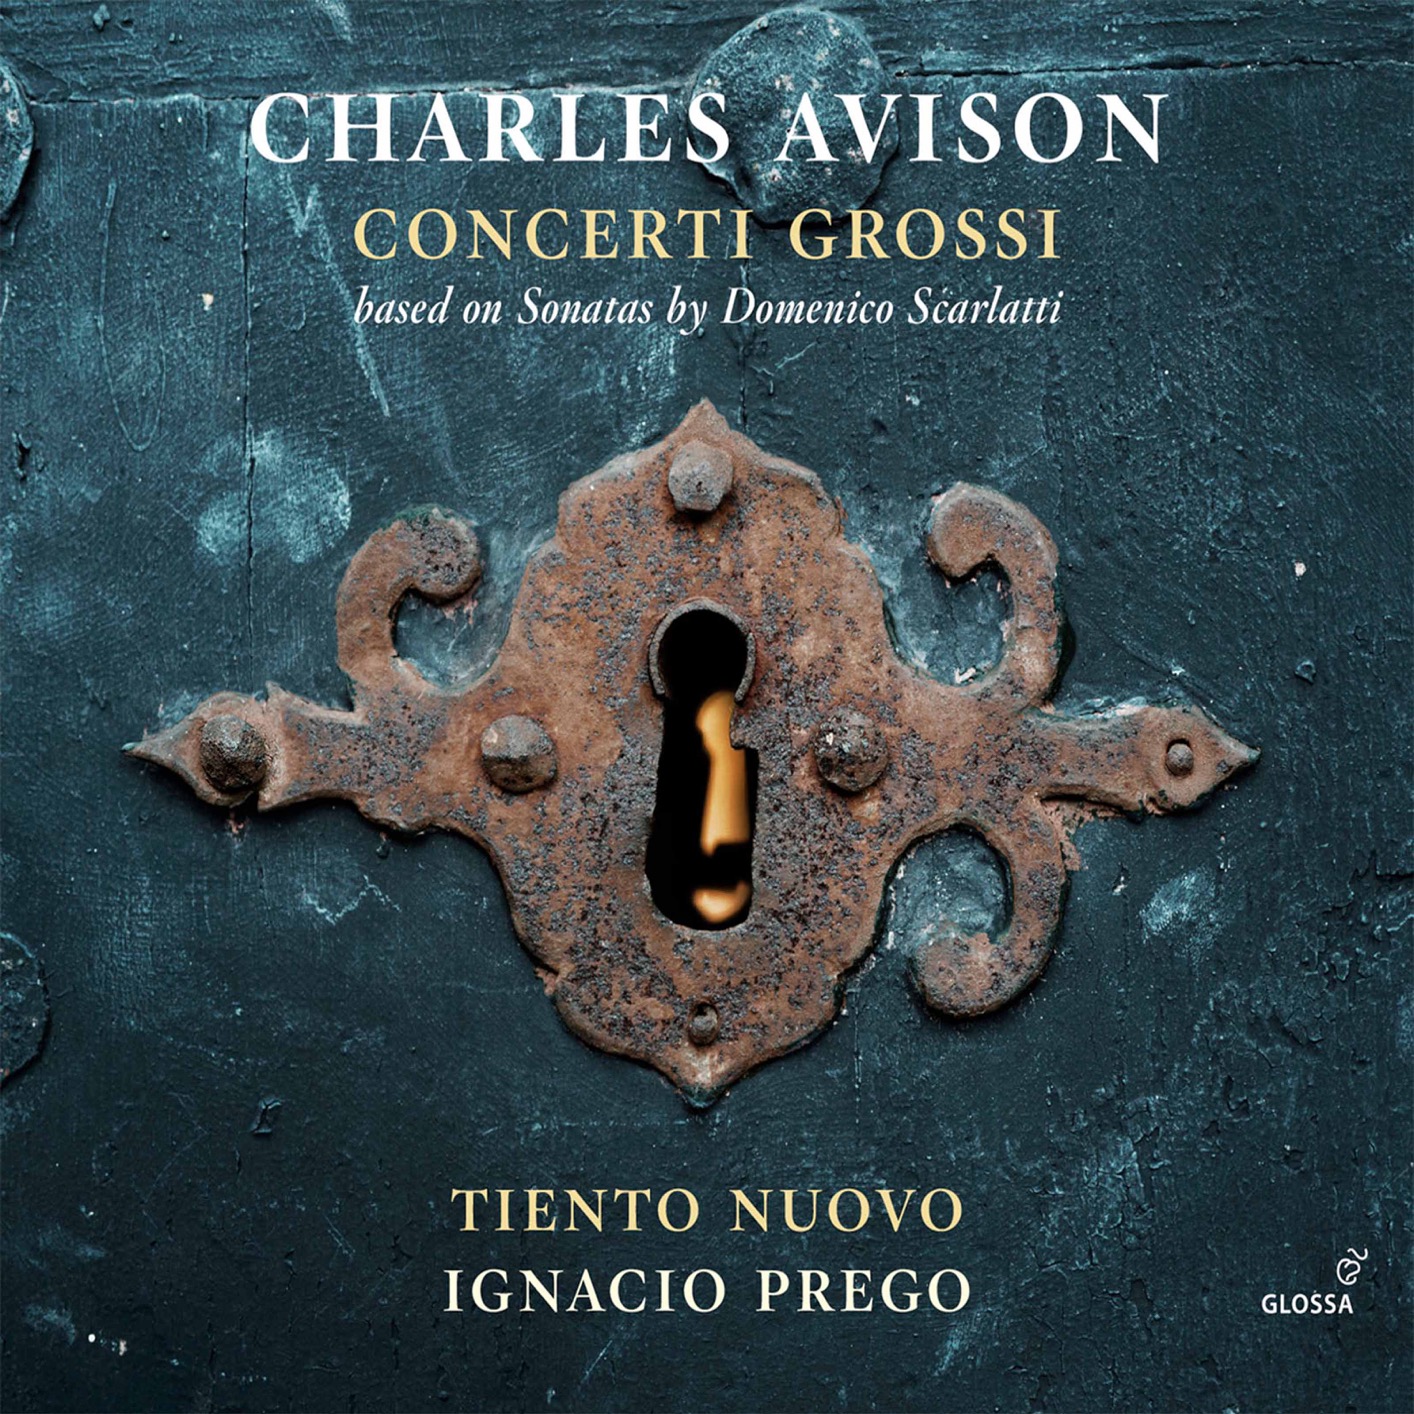 Tiento Nuovo & Ignacio Prego - Avison Concerti grossi (2021) [FLAC 24bit/88,2kHz]